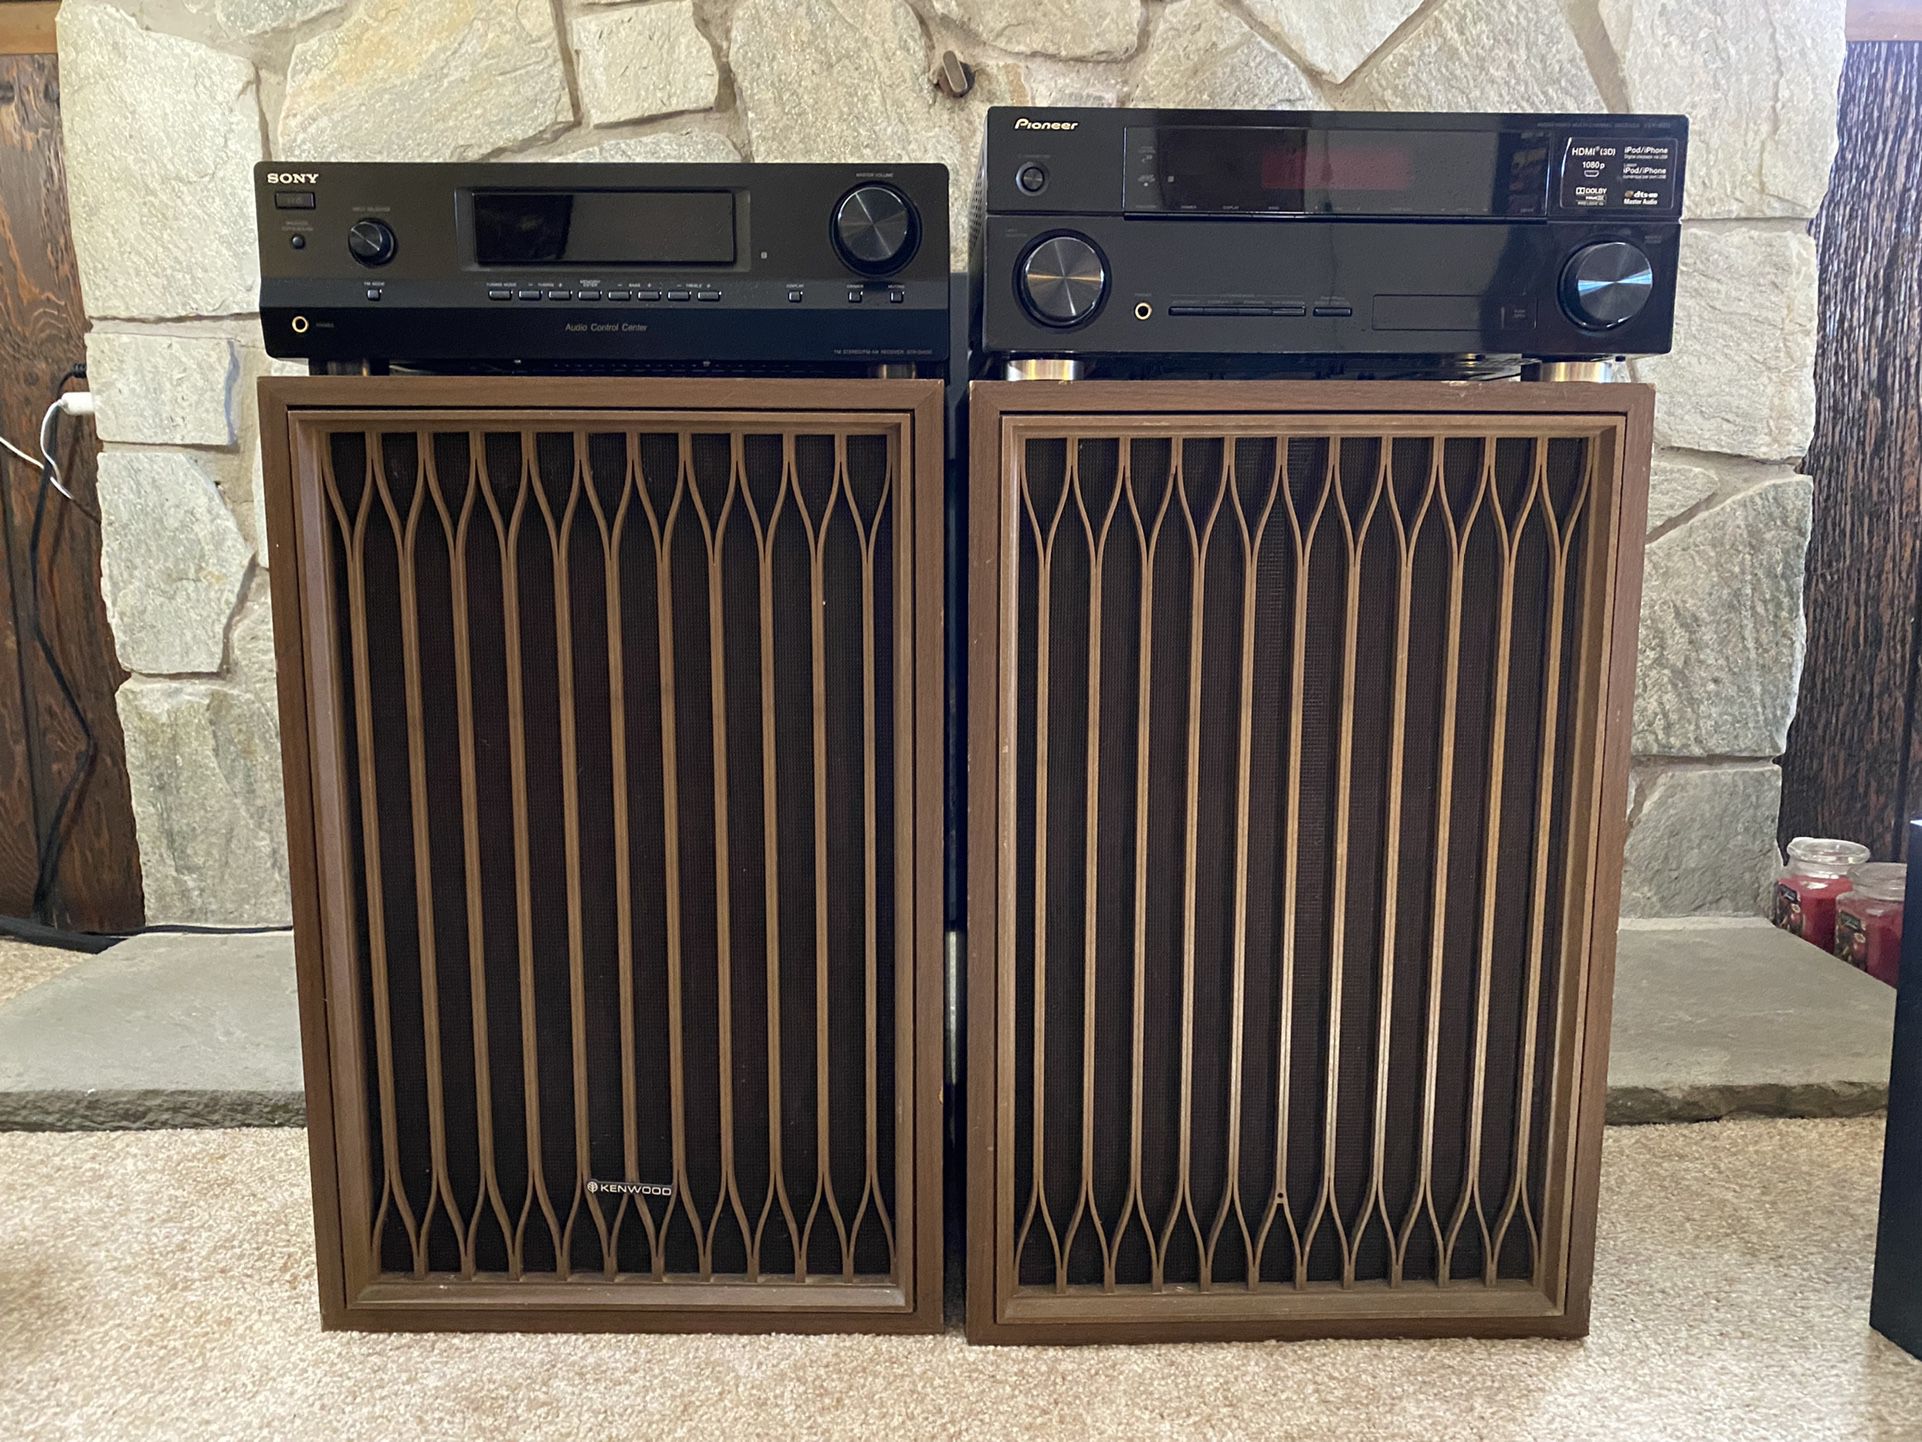 Sony STR-DH139,  Pioneer VSX-820-K Receivers, Kenwood KL-77A Speakers